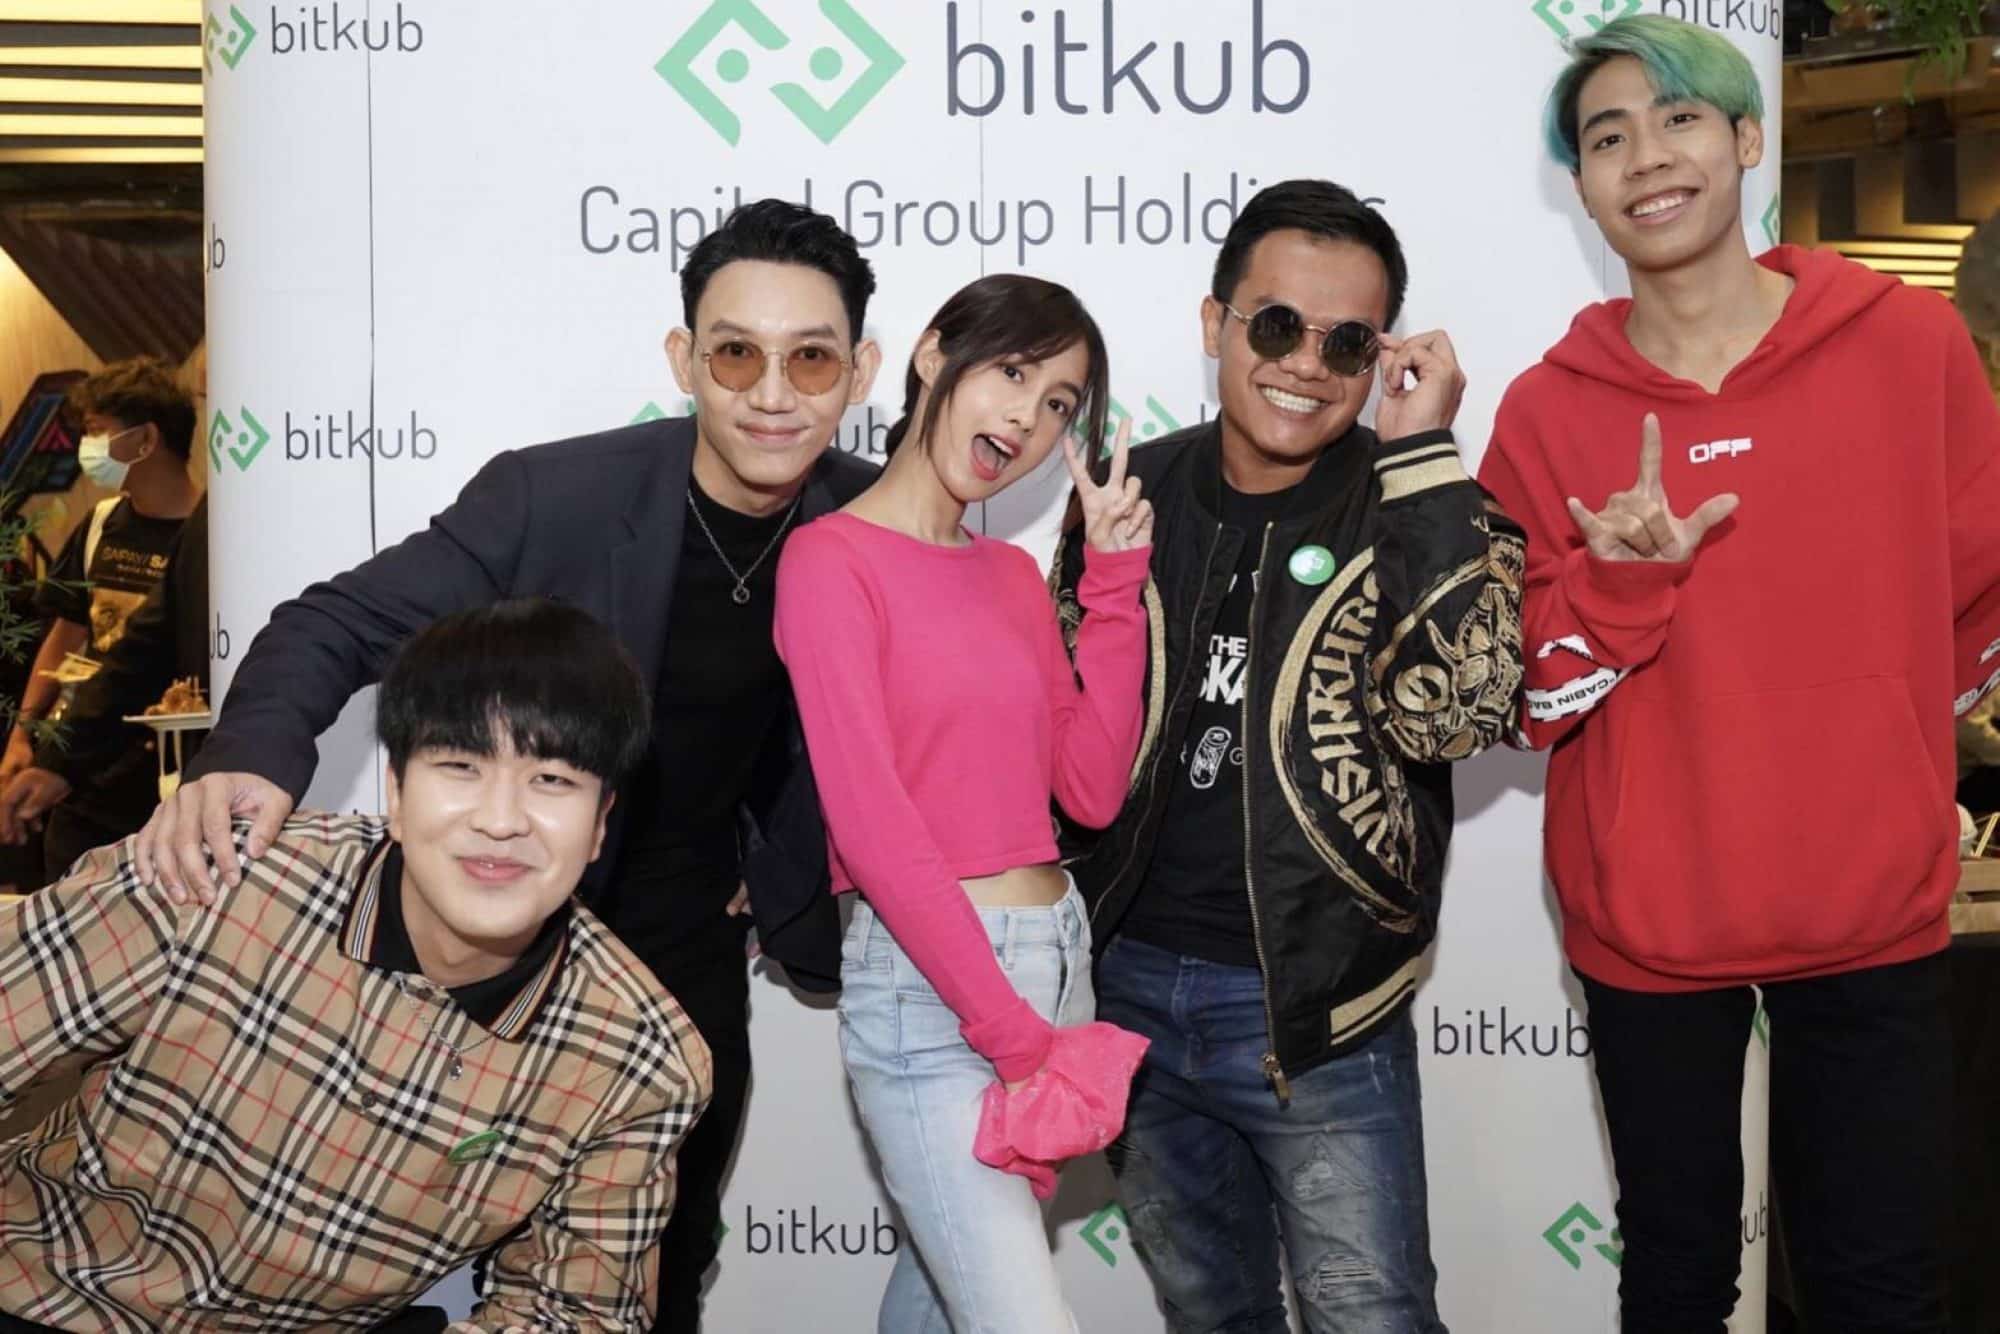 Bitkub สตาร์ทอัพด้านบล็อกเชนอันดับ 1 ของไทย แถลงความสำเร็จเติบโตกว่า 600% พร้อมเปิดตัวบริษัทน้องใหม่ในเครือและเหรียญคริปโต $FANS (Fans Token) 3